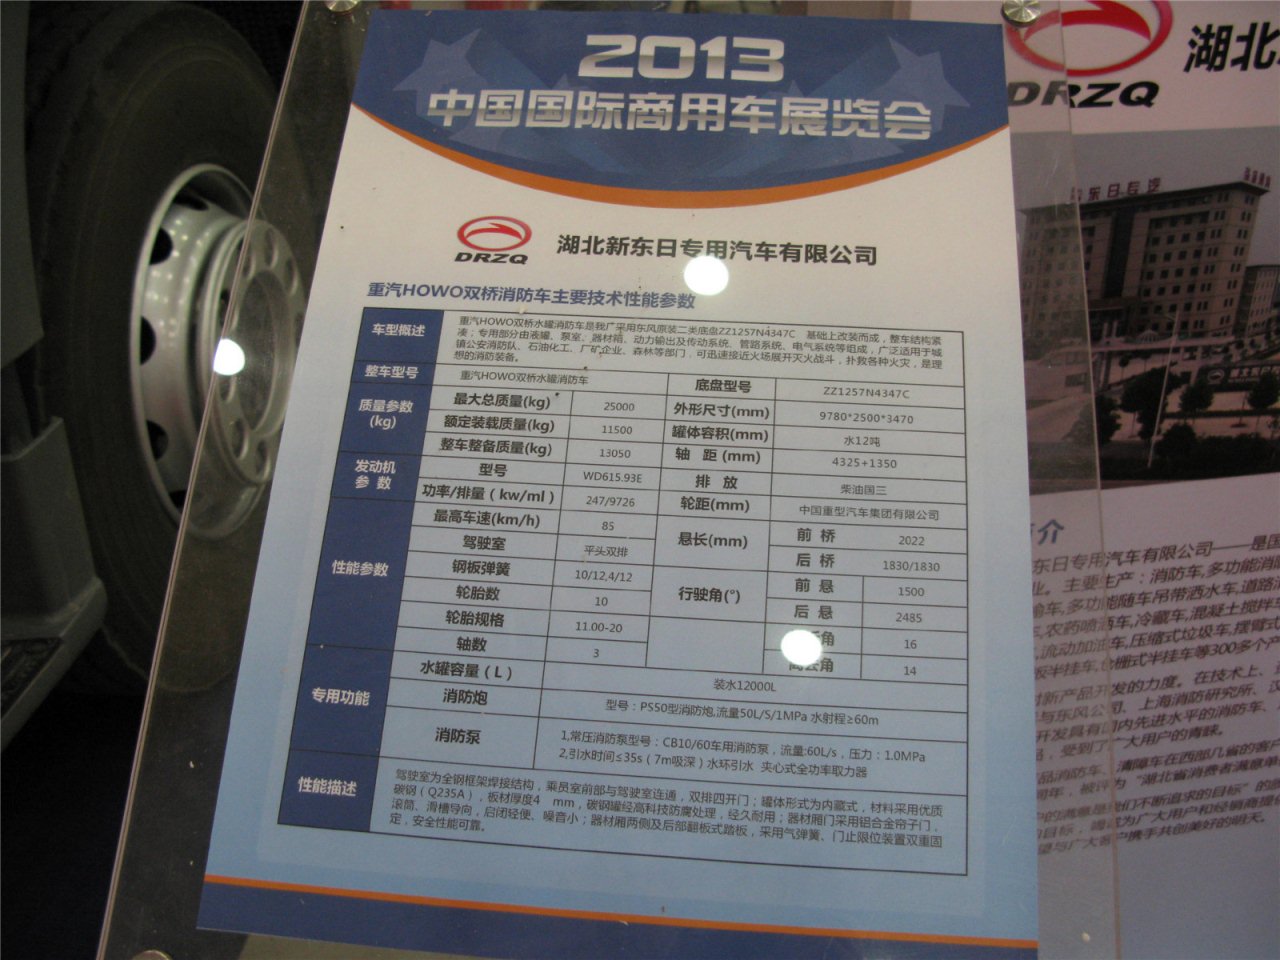 第二届中国国际商用车展览车型：湖北新东日双桥消防车